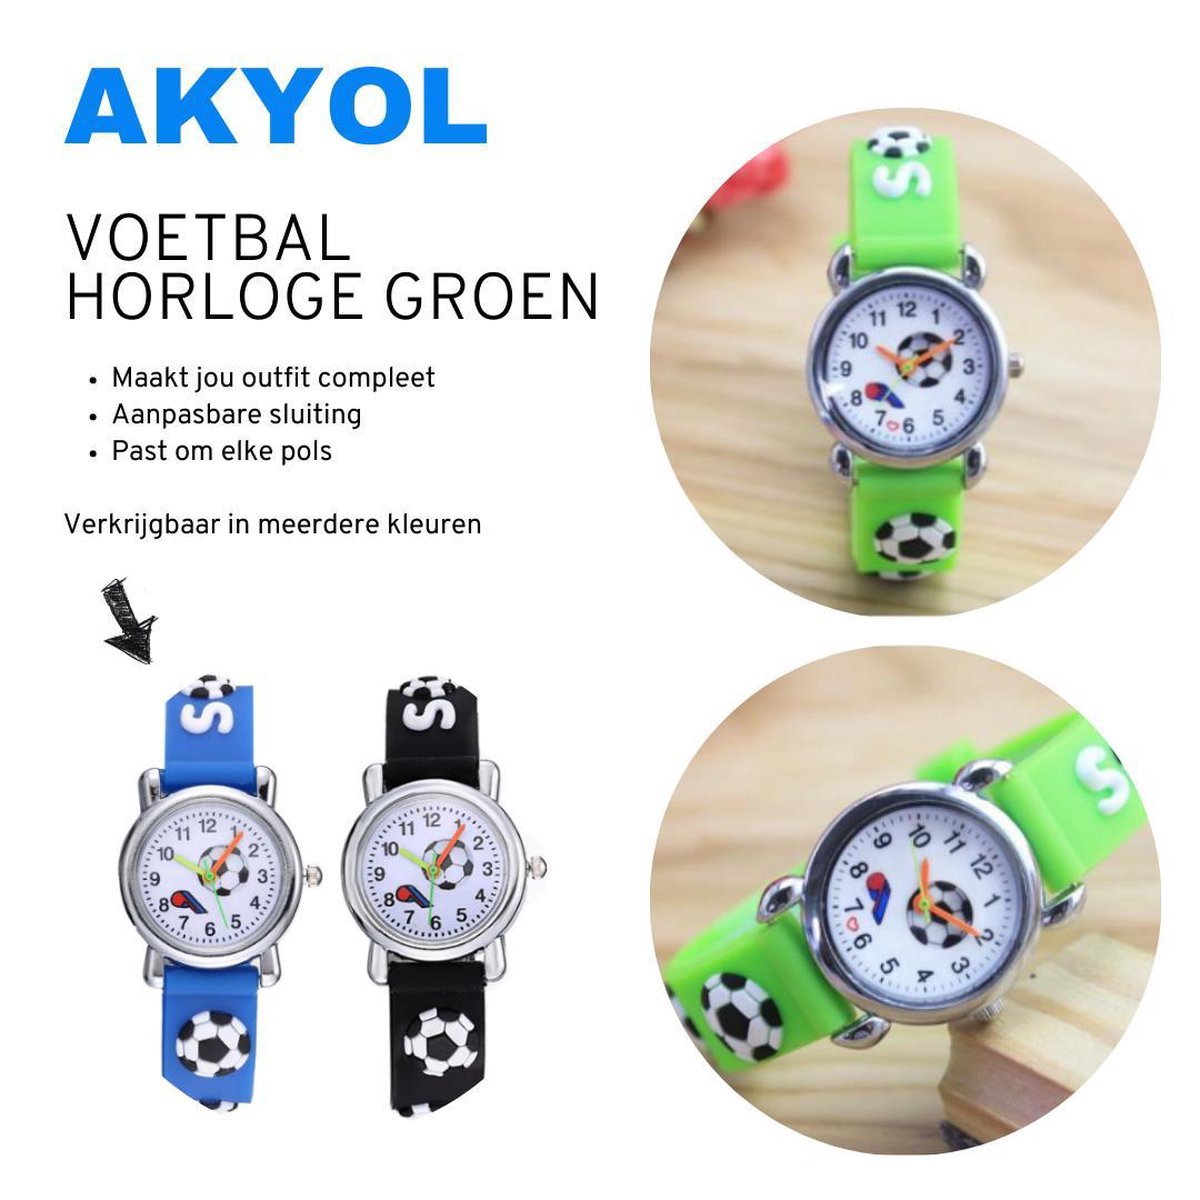 Akyol - Voetbal horloge - Siliconen horloge - Kinderhorloge - kind horloge - horloge - tijd - klok - voetbal - sport horloge - groen